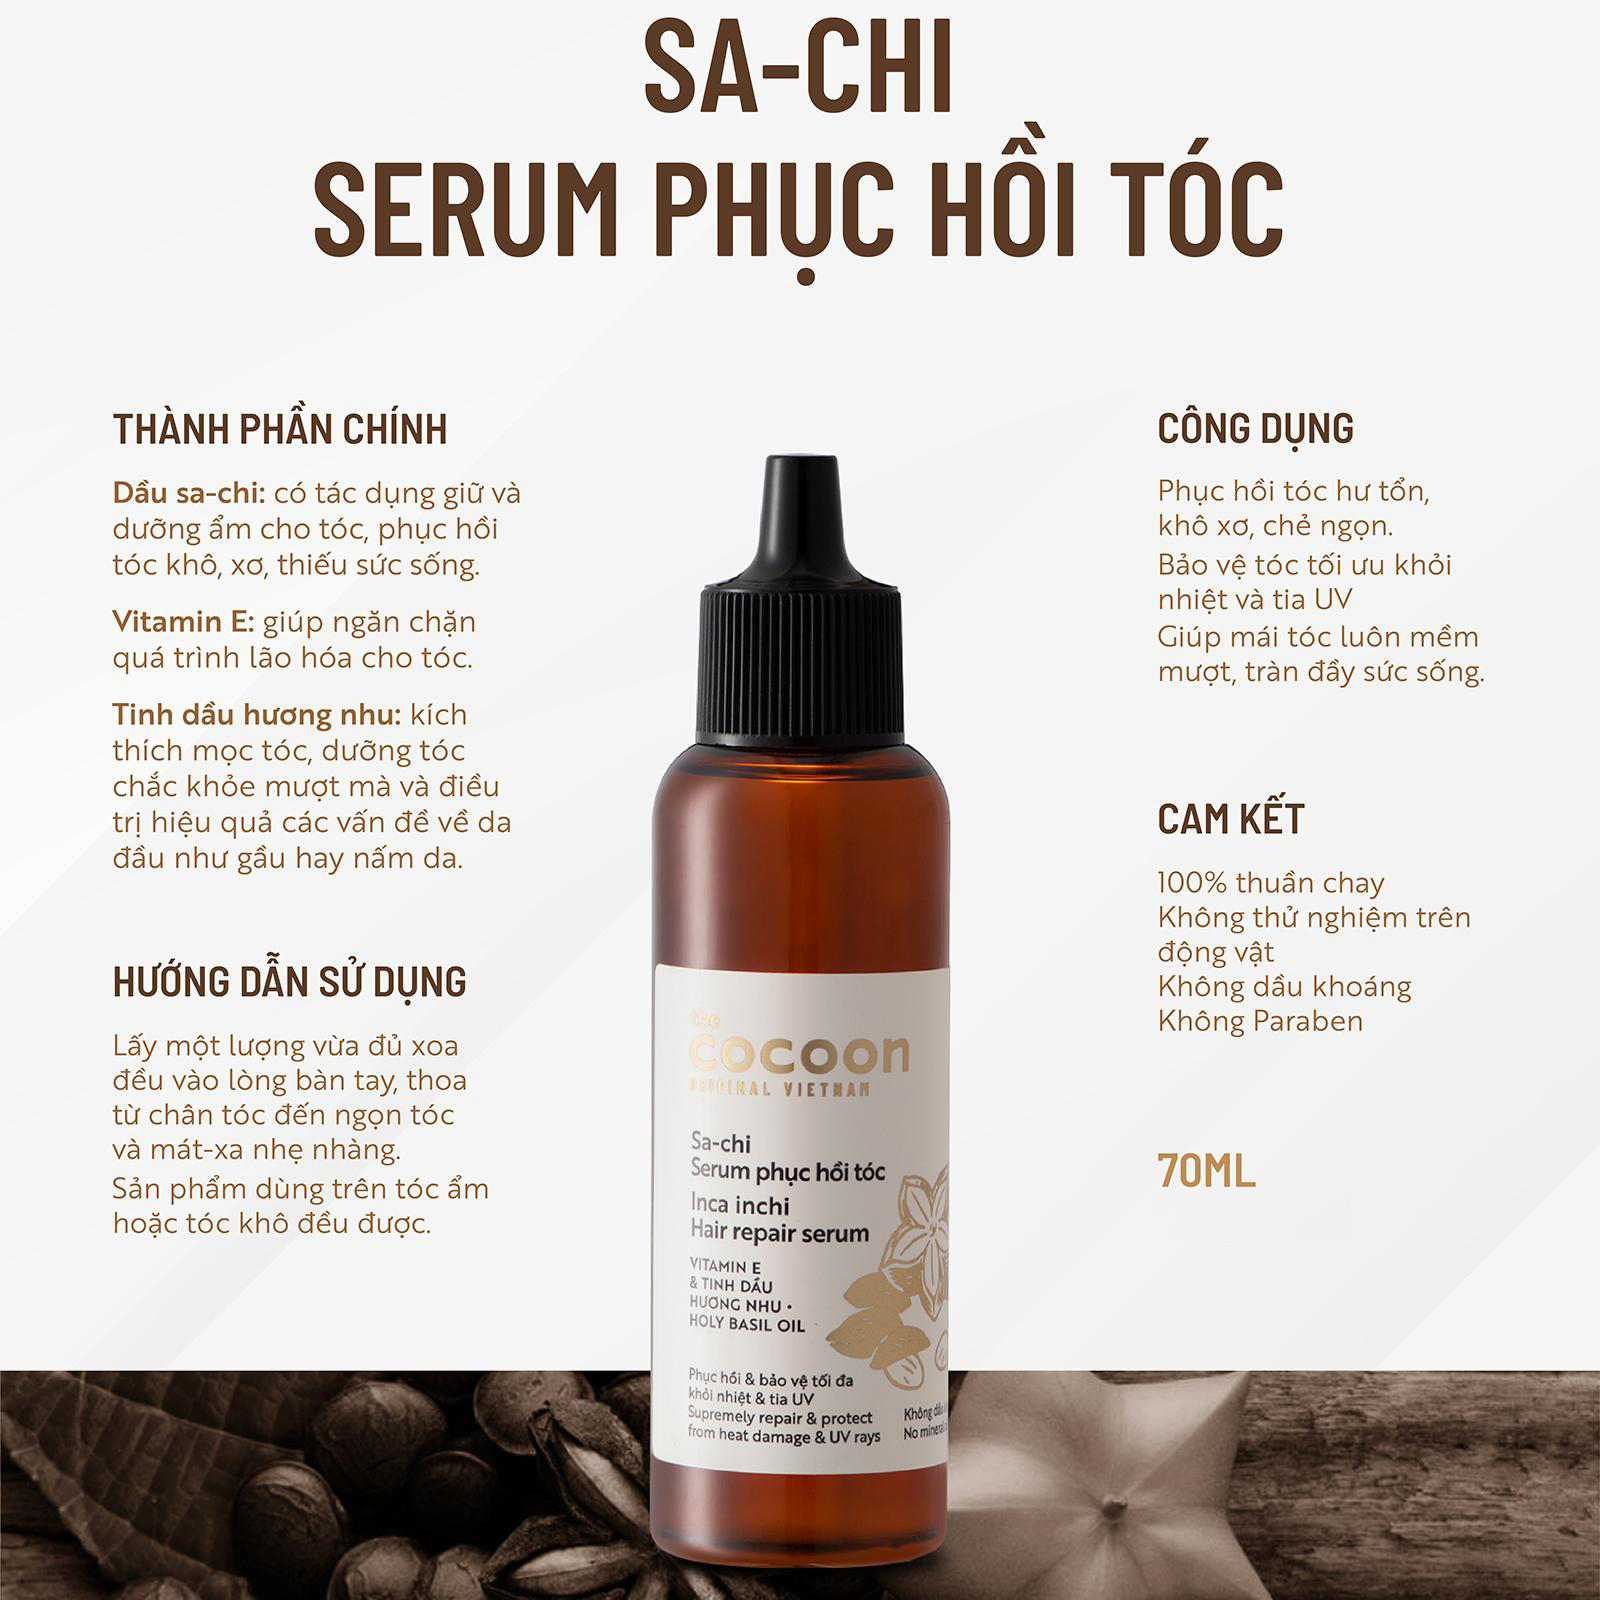 Serum Sa-chi phục hồi tóc Cocoon 70ml